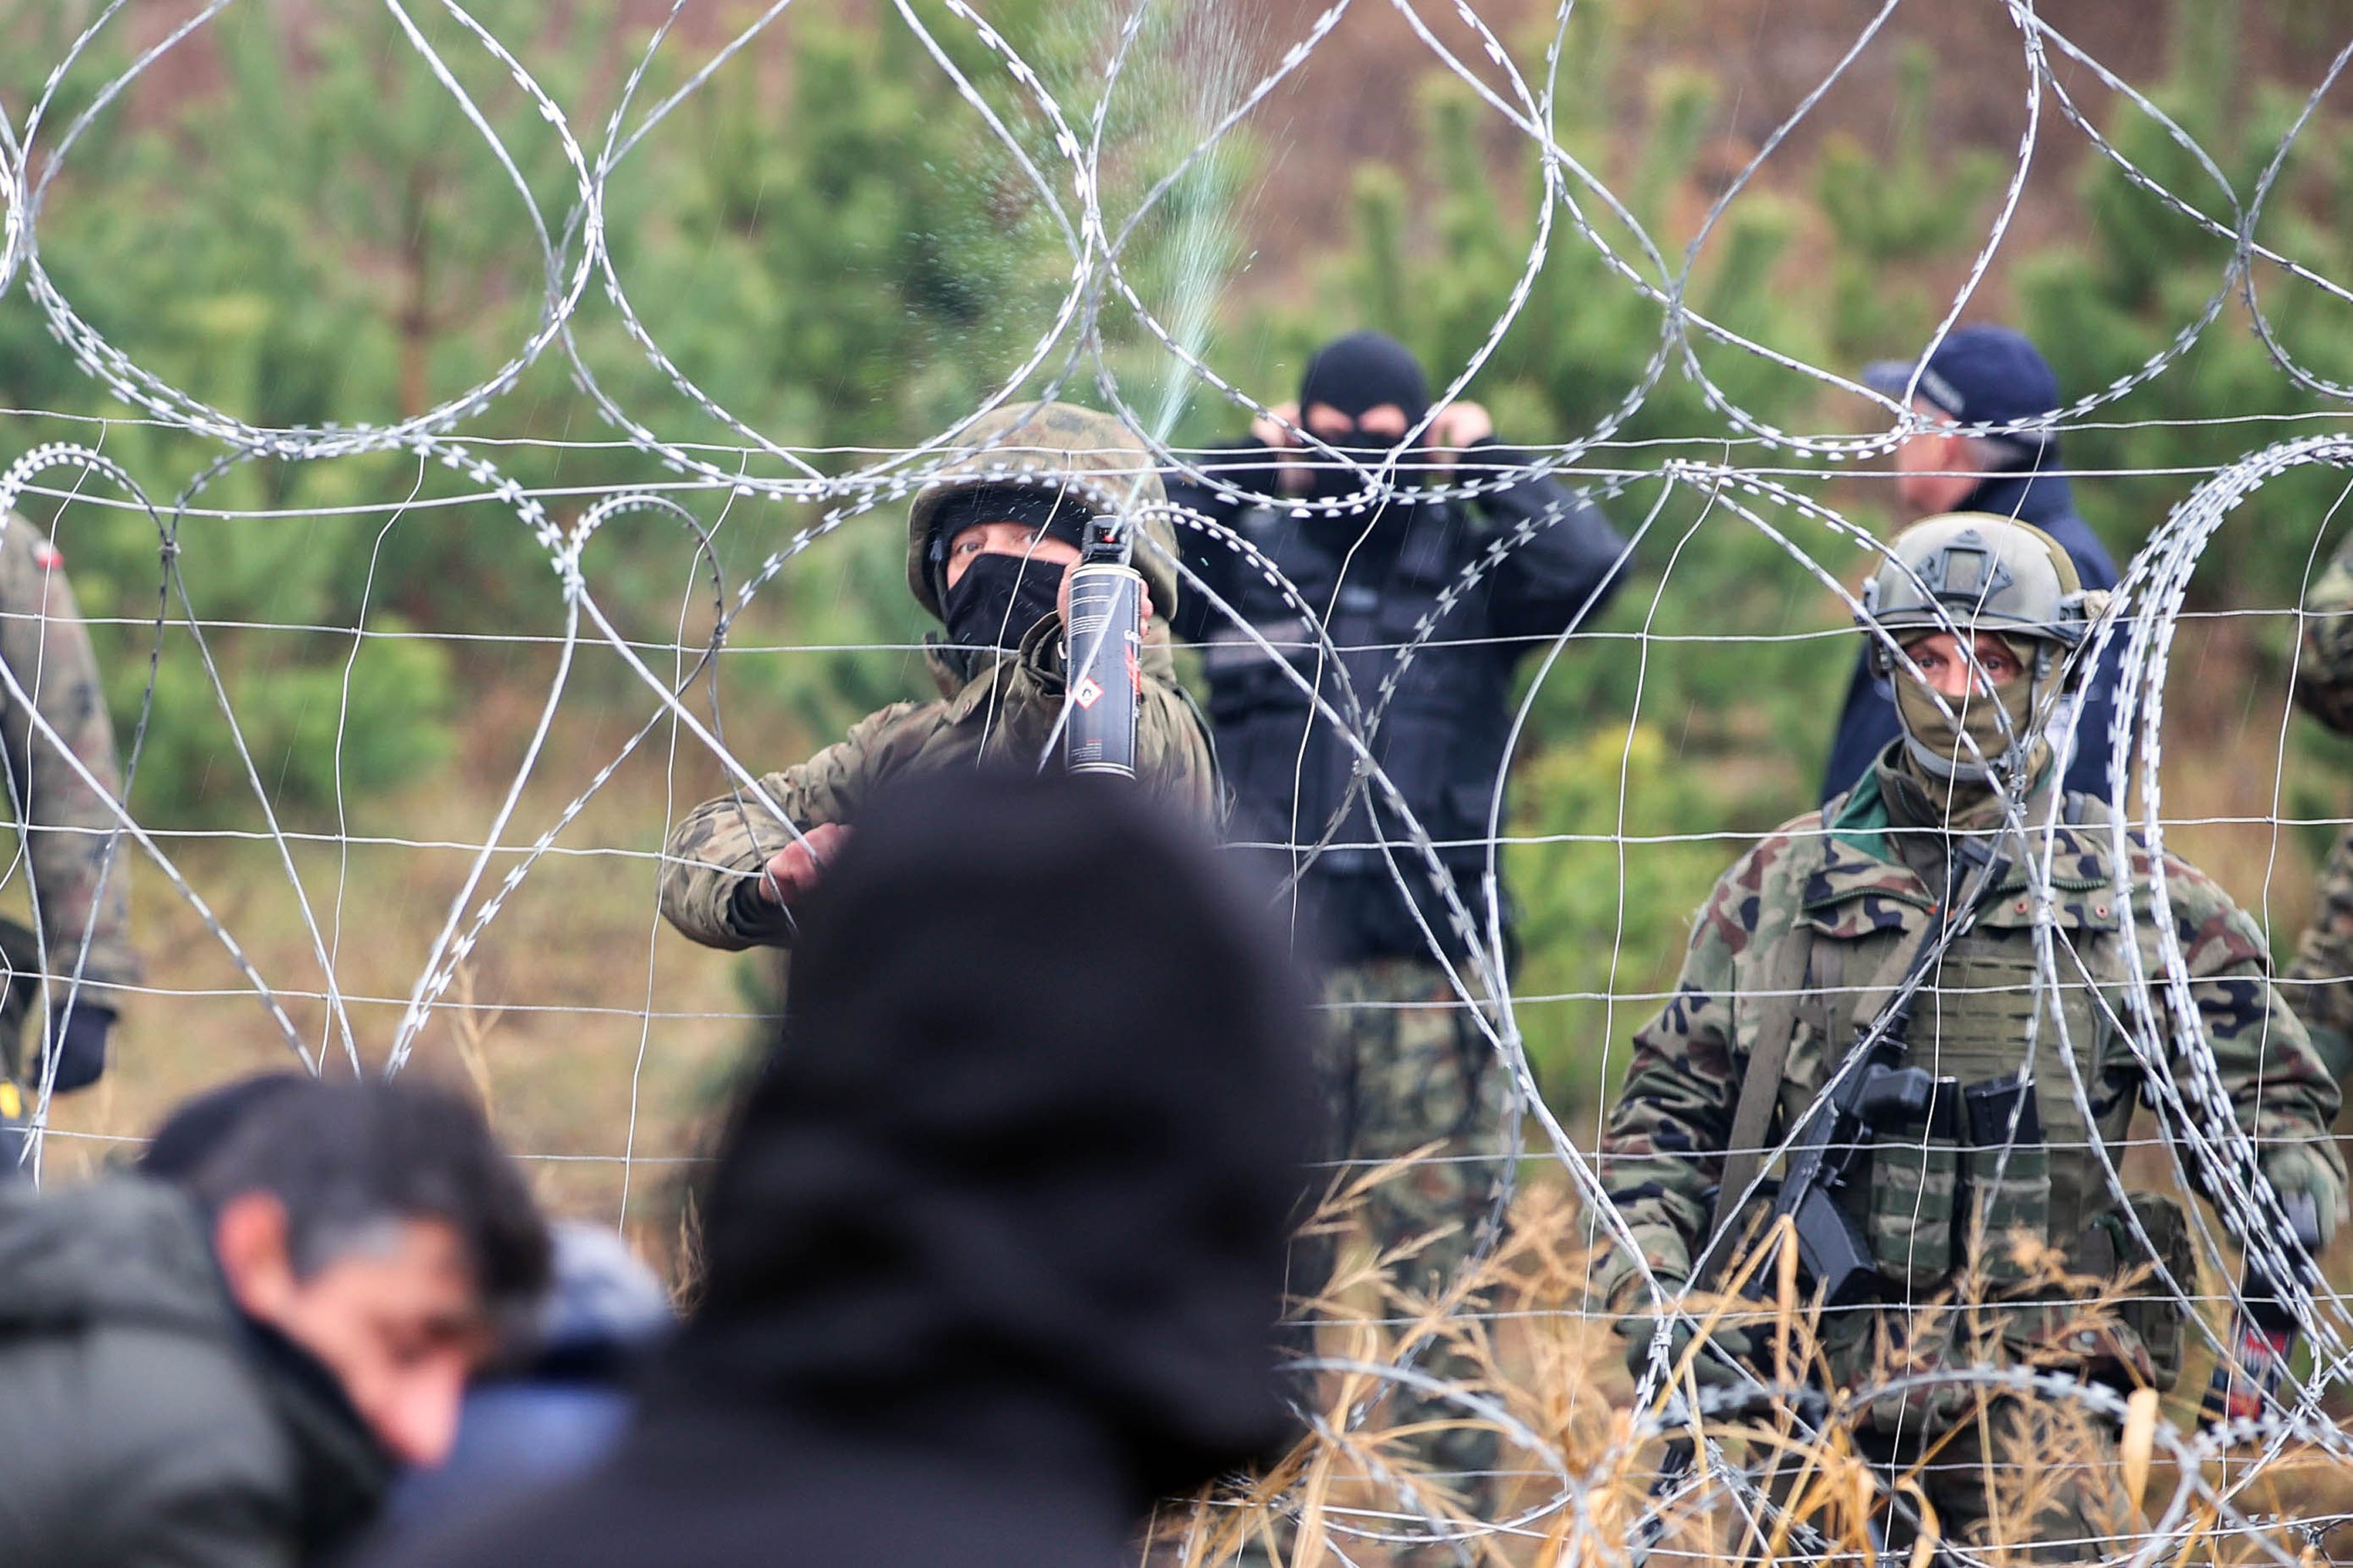 Migrantes encaminhados na fronteira Bielorrússia com a Polónia